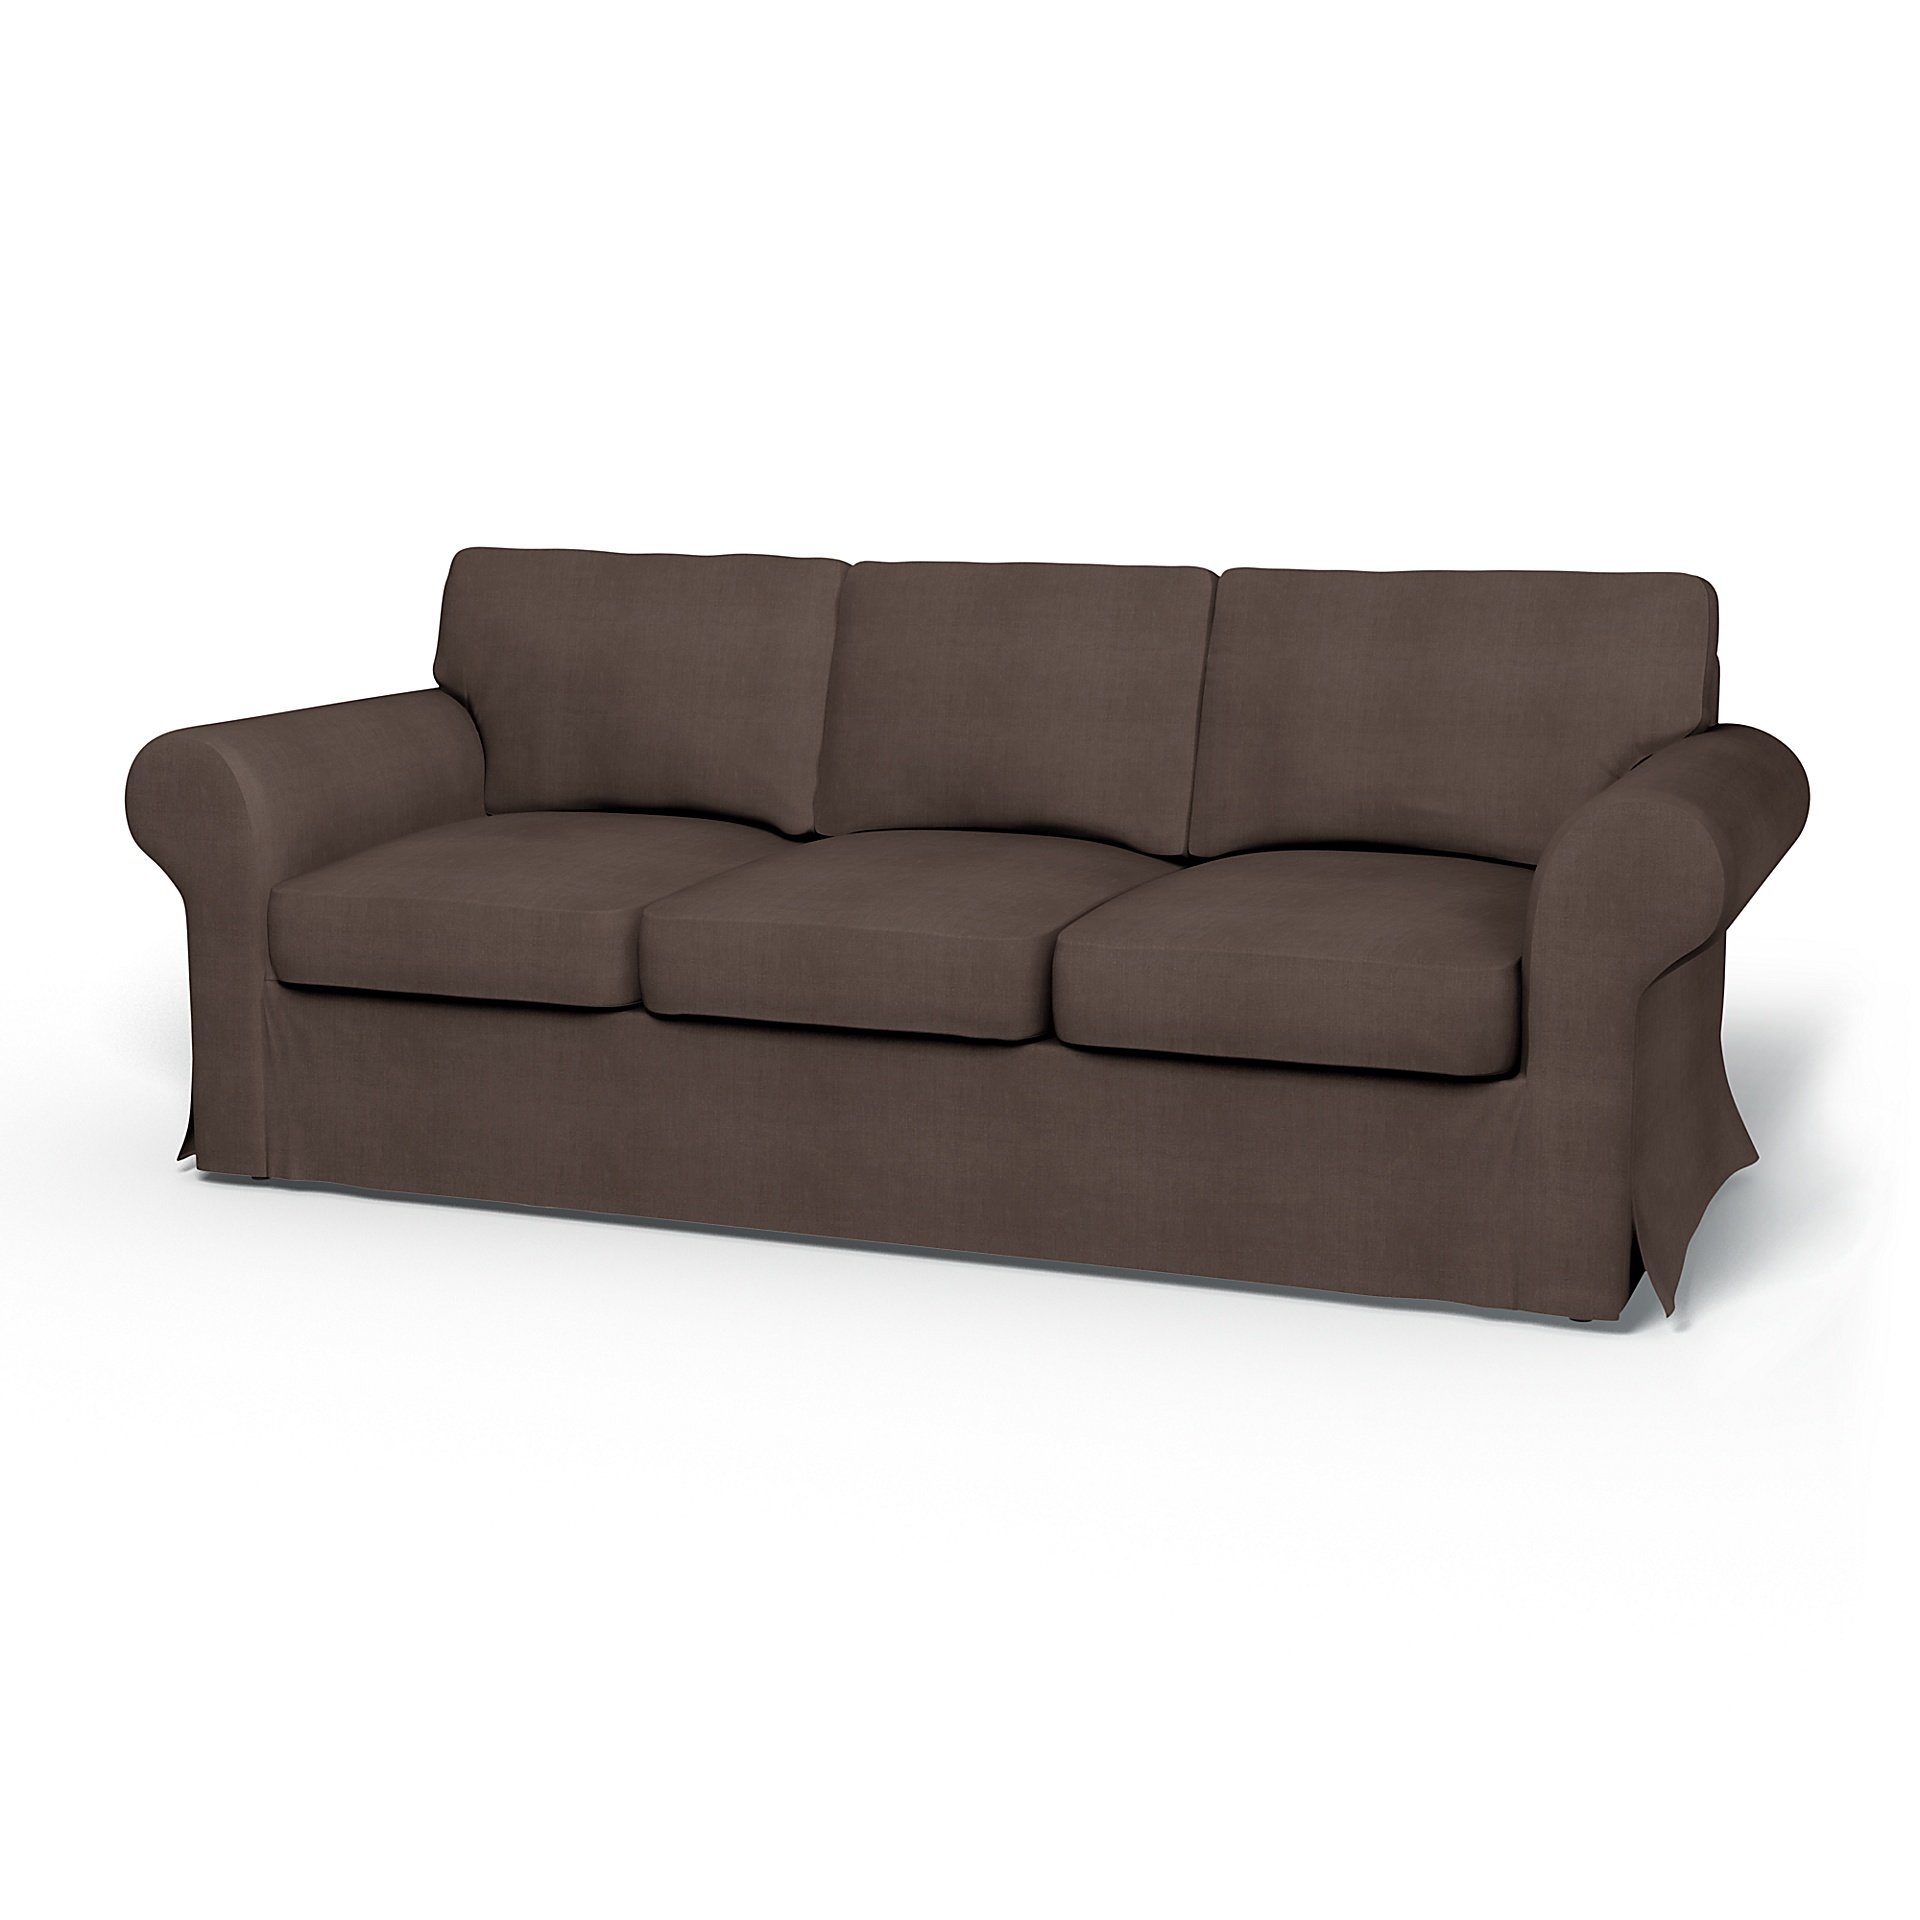 IKEA - Ektorp 3 Seater Sofa Bed Cover, Cocoa, Linen - Bemz